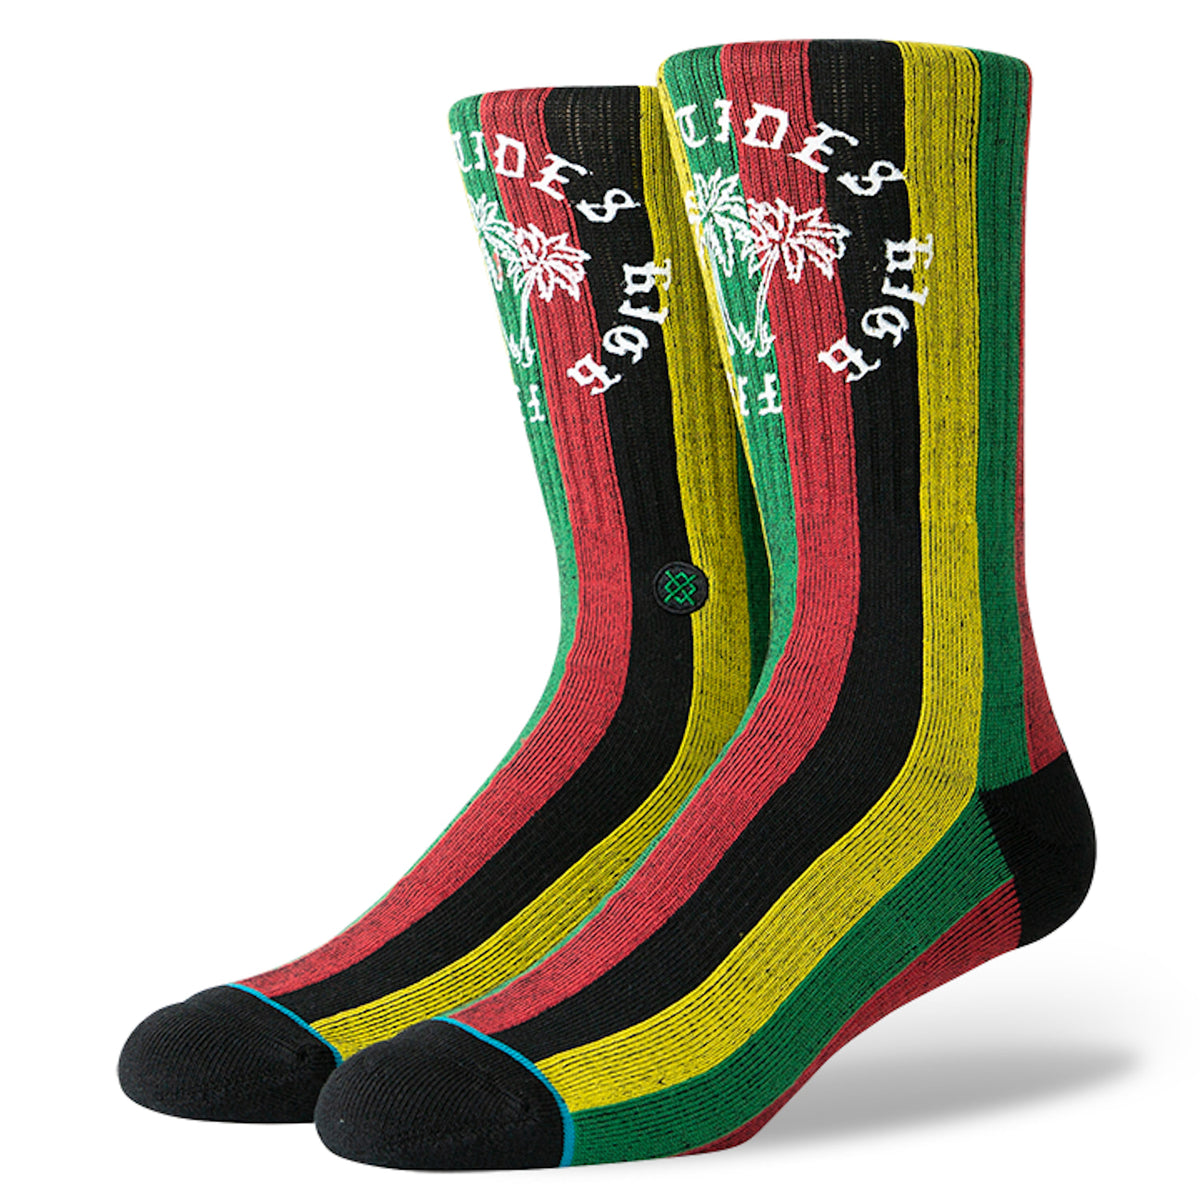 Stance - High Fives Men's Socks, Multi